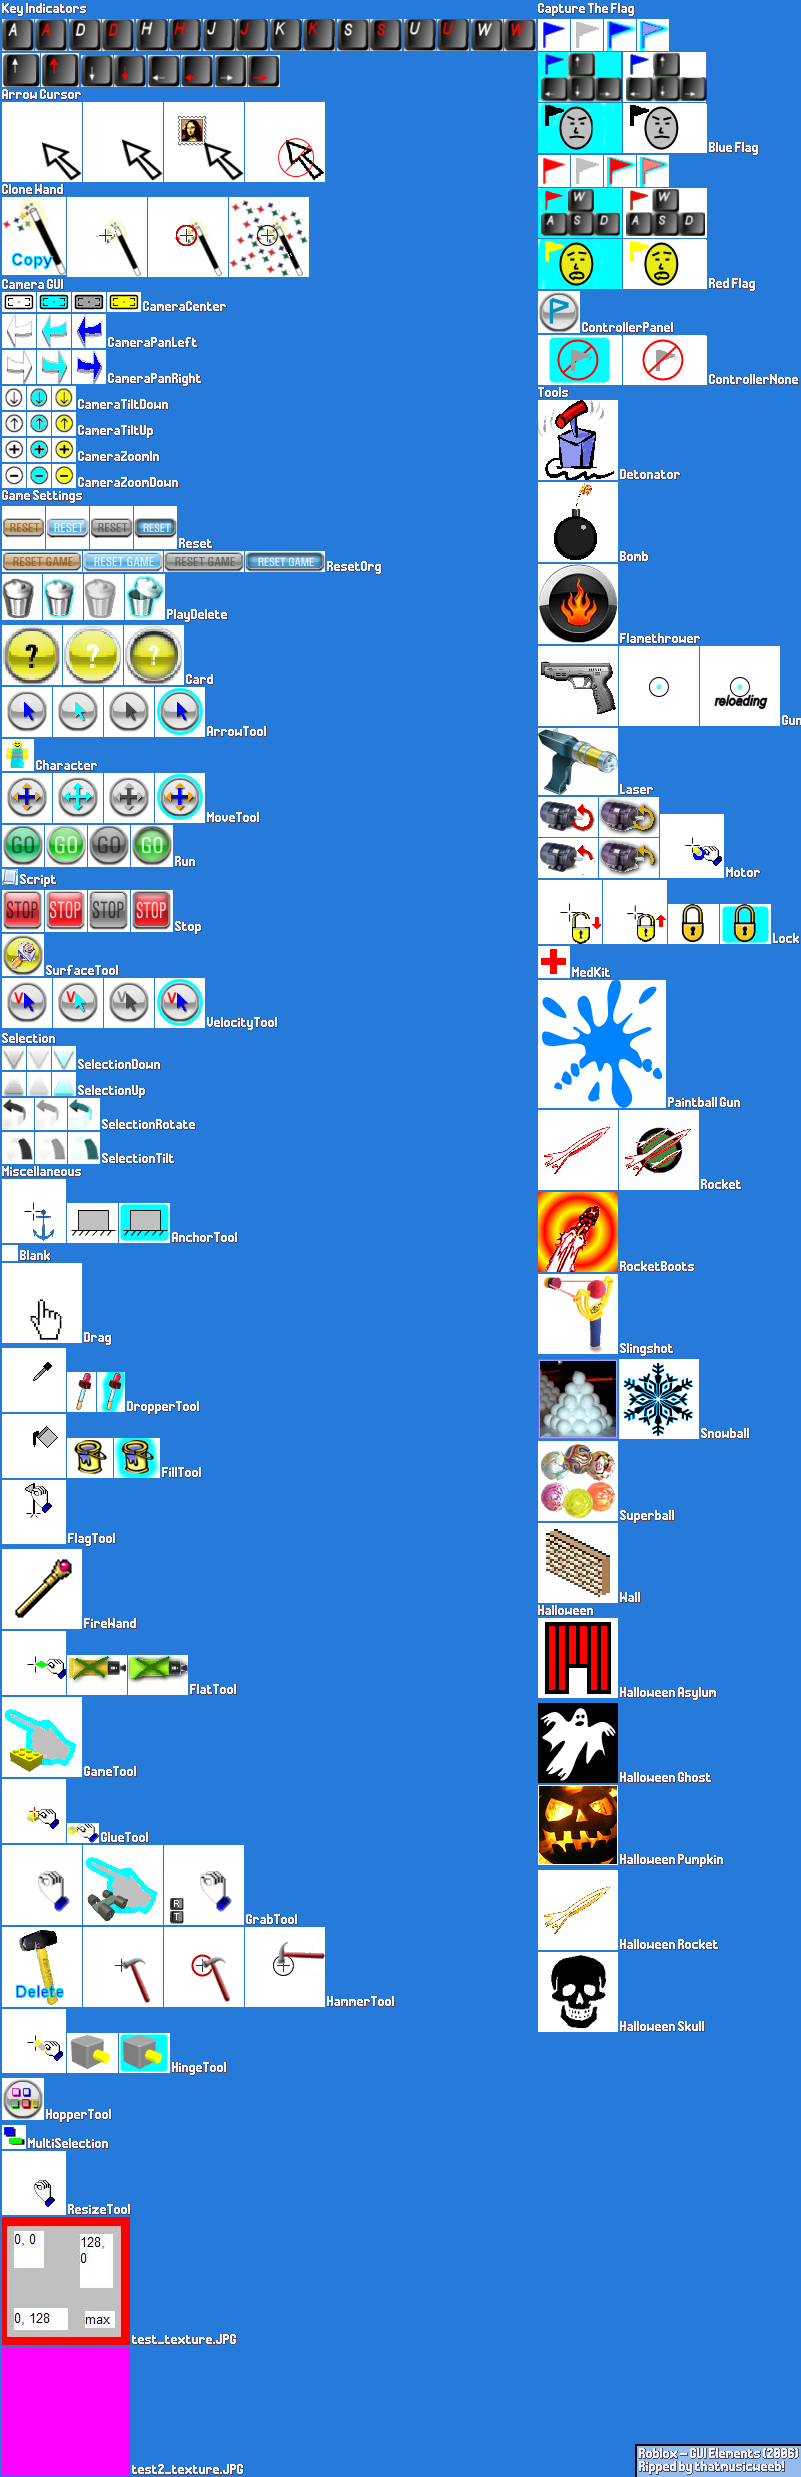 GUI Elements (2006)